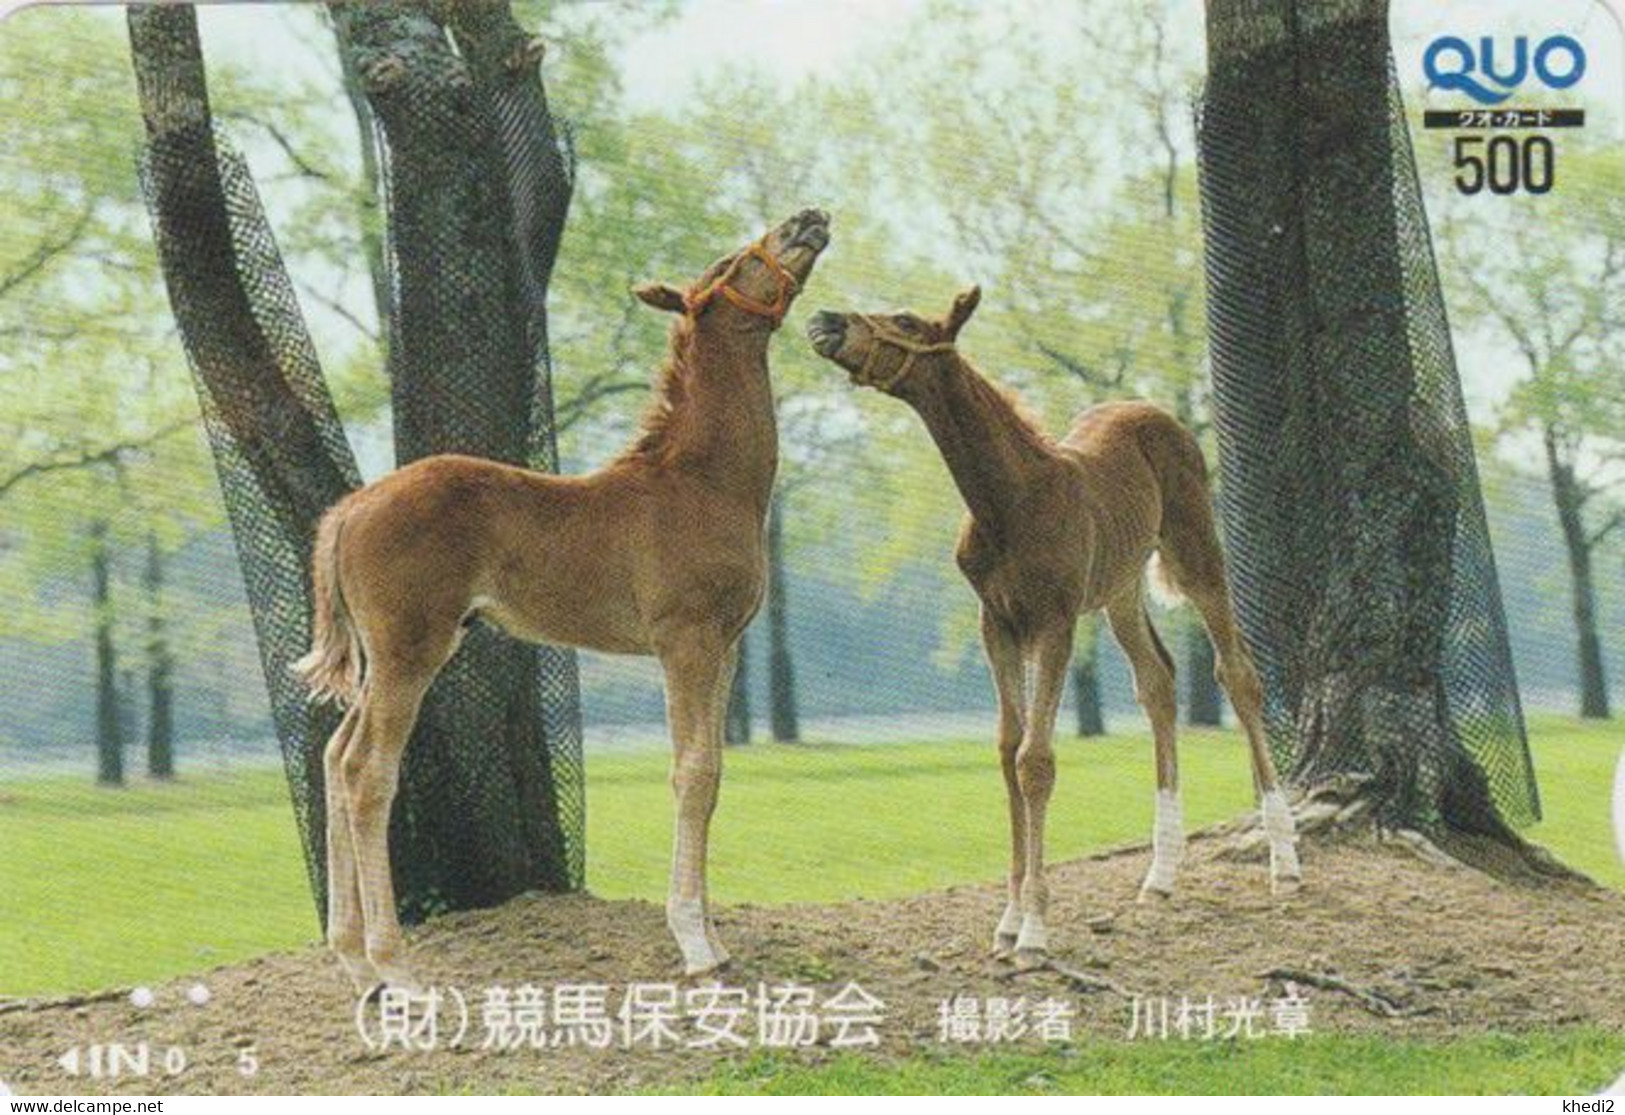 Carte Prépayée JAPON - ANIMAL - CHEVAL Chevaux / Poulain - HORSE JAPAN Prepaid Quo Card - PFERD - BE 412 - Chevaux